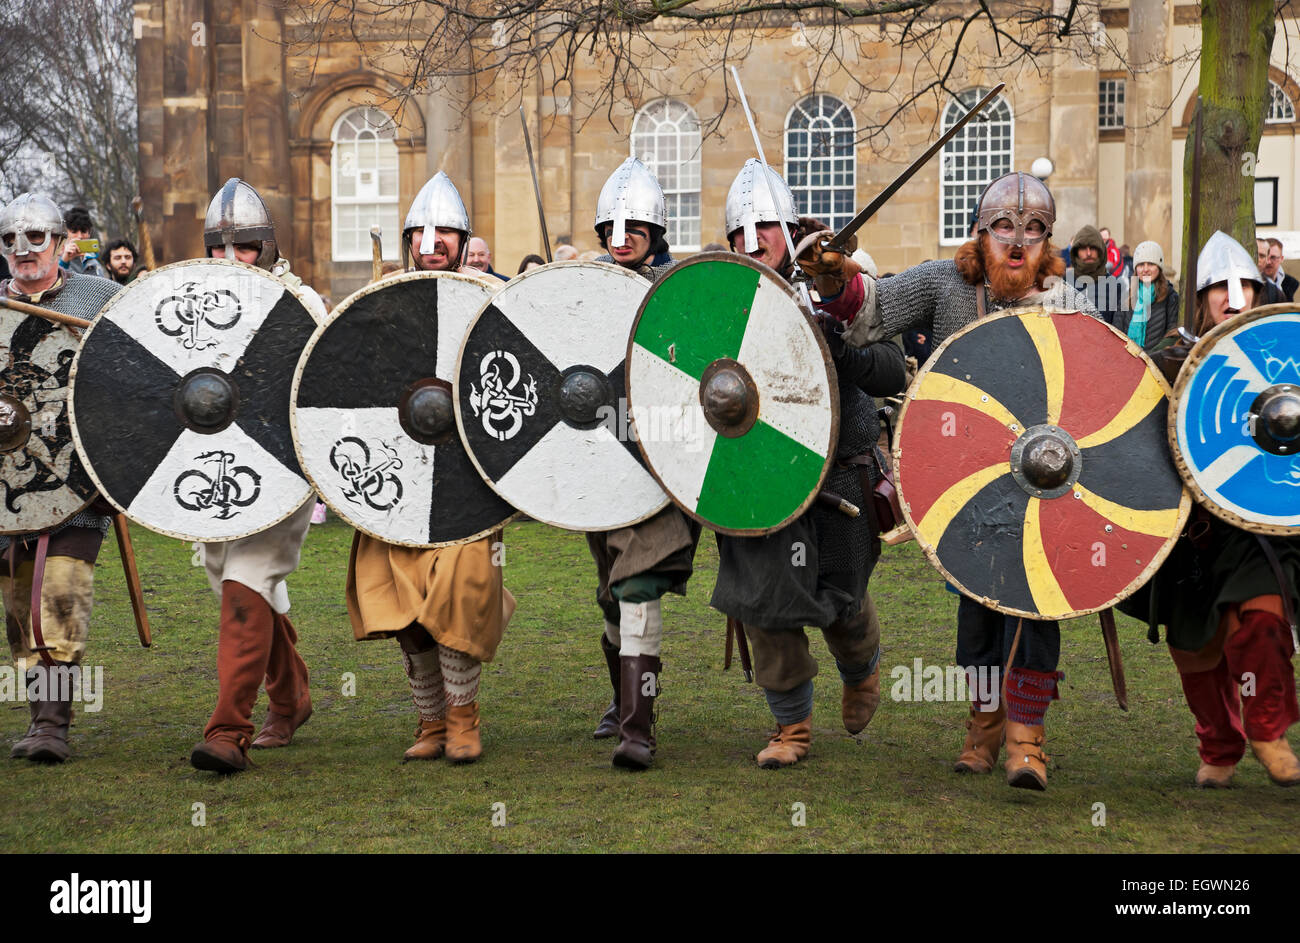 Primo piano dei guerrieri vichinghi in costume medievale al Jorvik Viking Festival York North Yorkshire Inghilterra Regno Unito GB Gran Bretagna Foto Stock